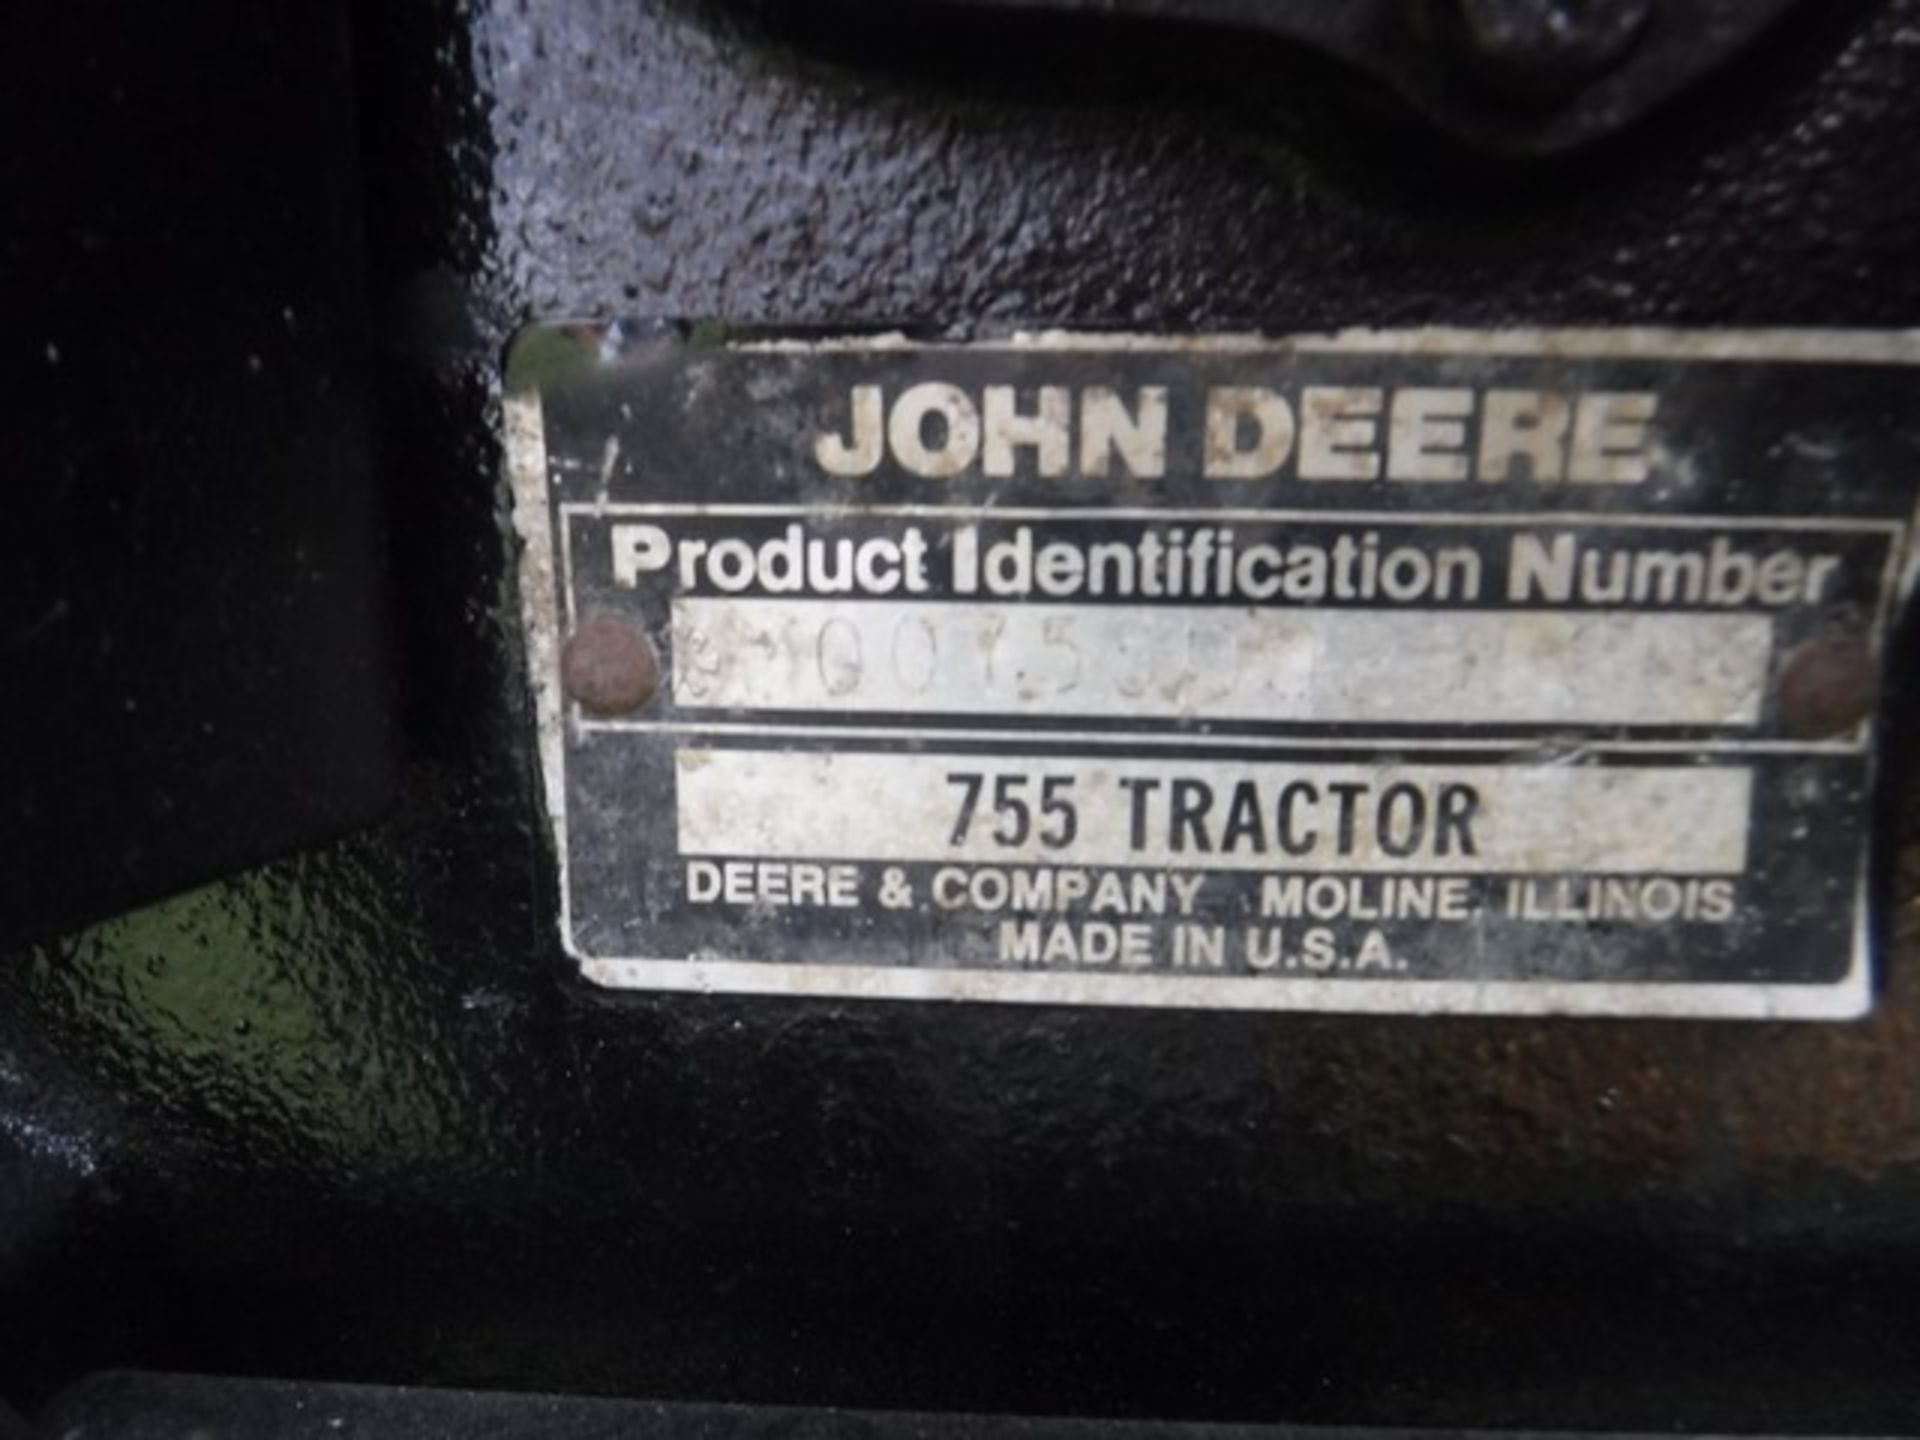 JOHN DEERE 4 x 4 Tractor 755. Reg - H97FBJ. 1003hrs (not verified) - Image 15 of 15